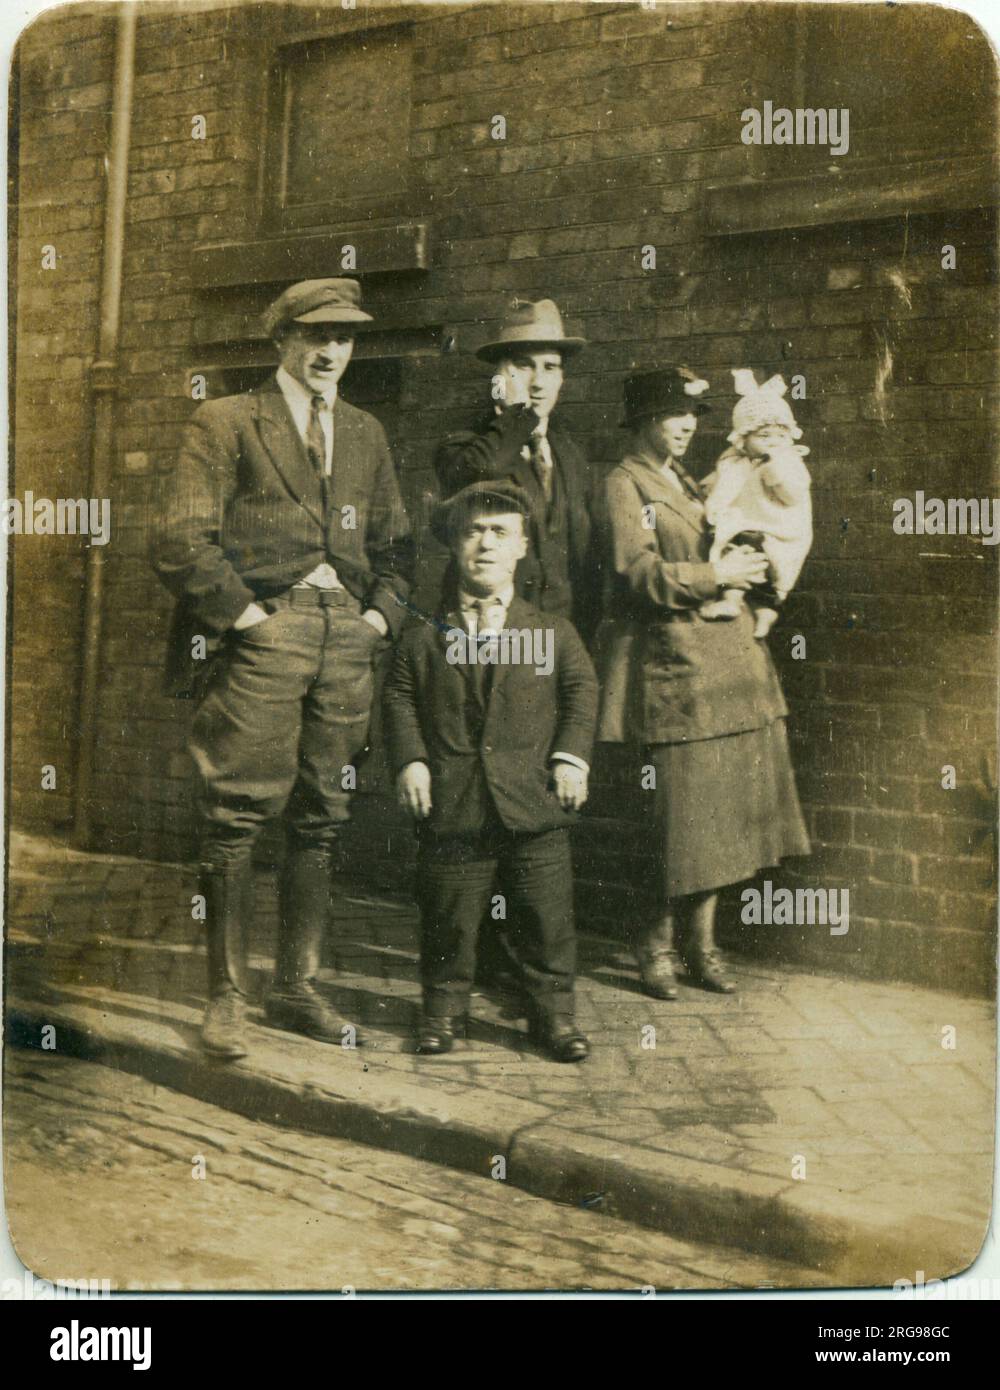 Groupe de personnes, peut-être des membres de la famille, y compris un homme de croissance restreinte (nanisme), années 1920 Banque D'Images